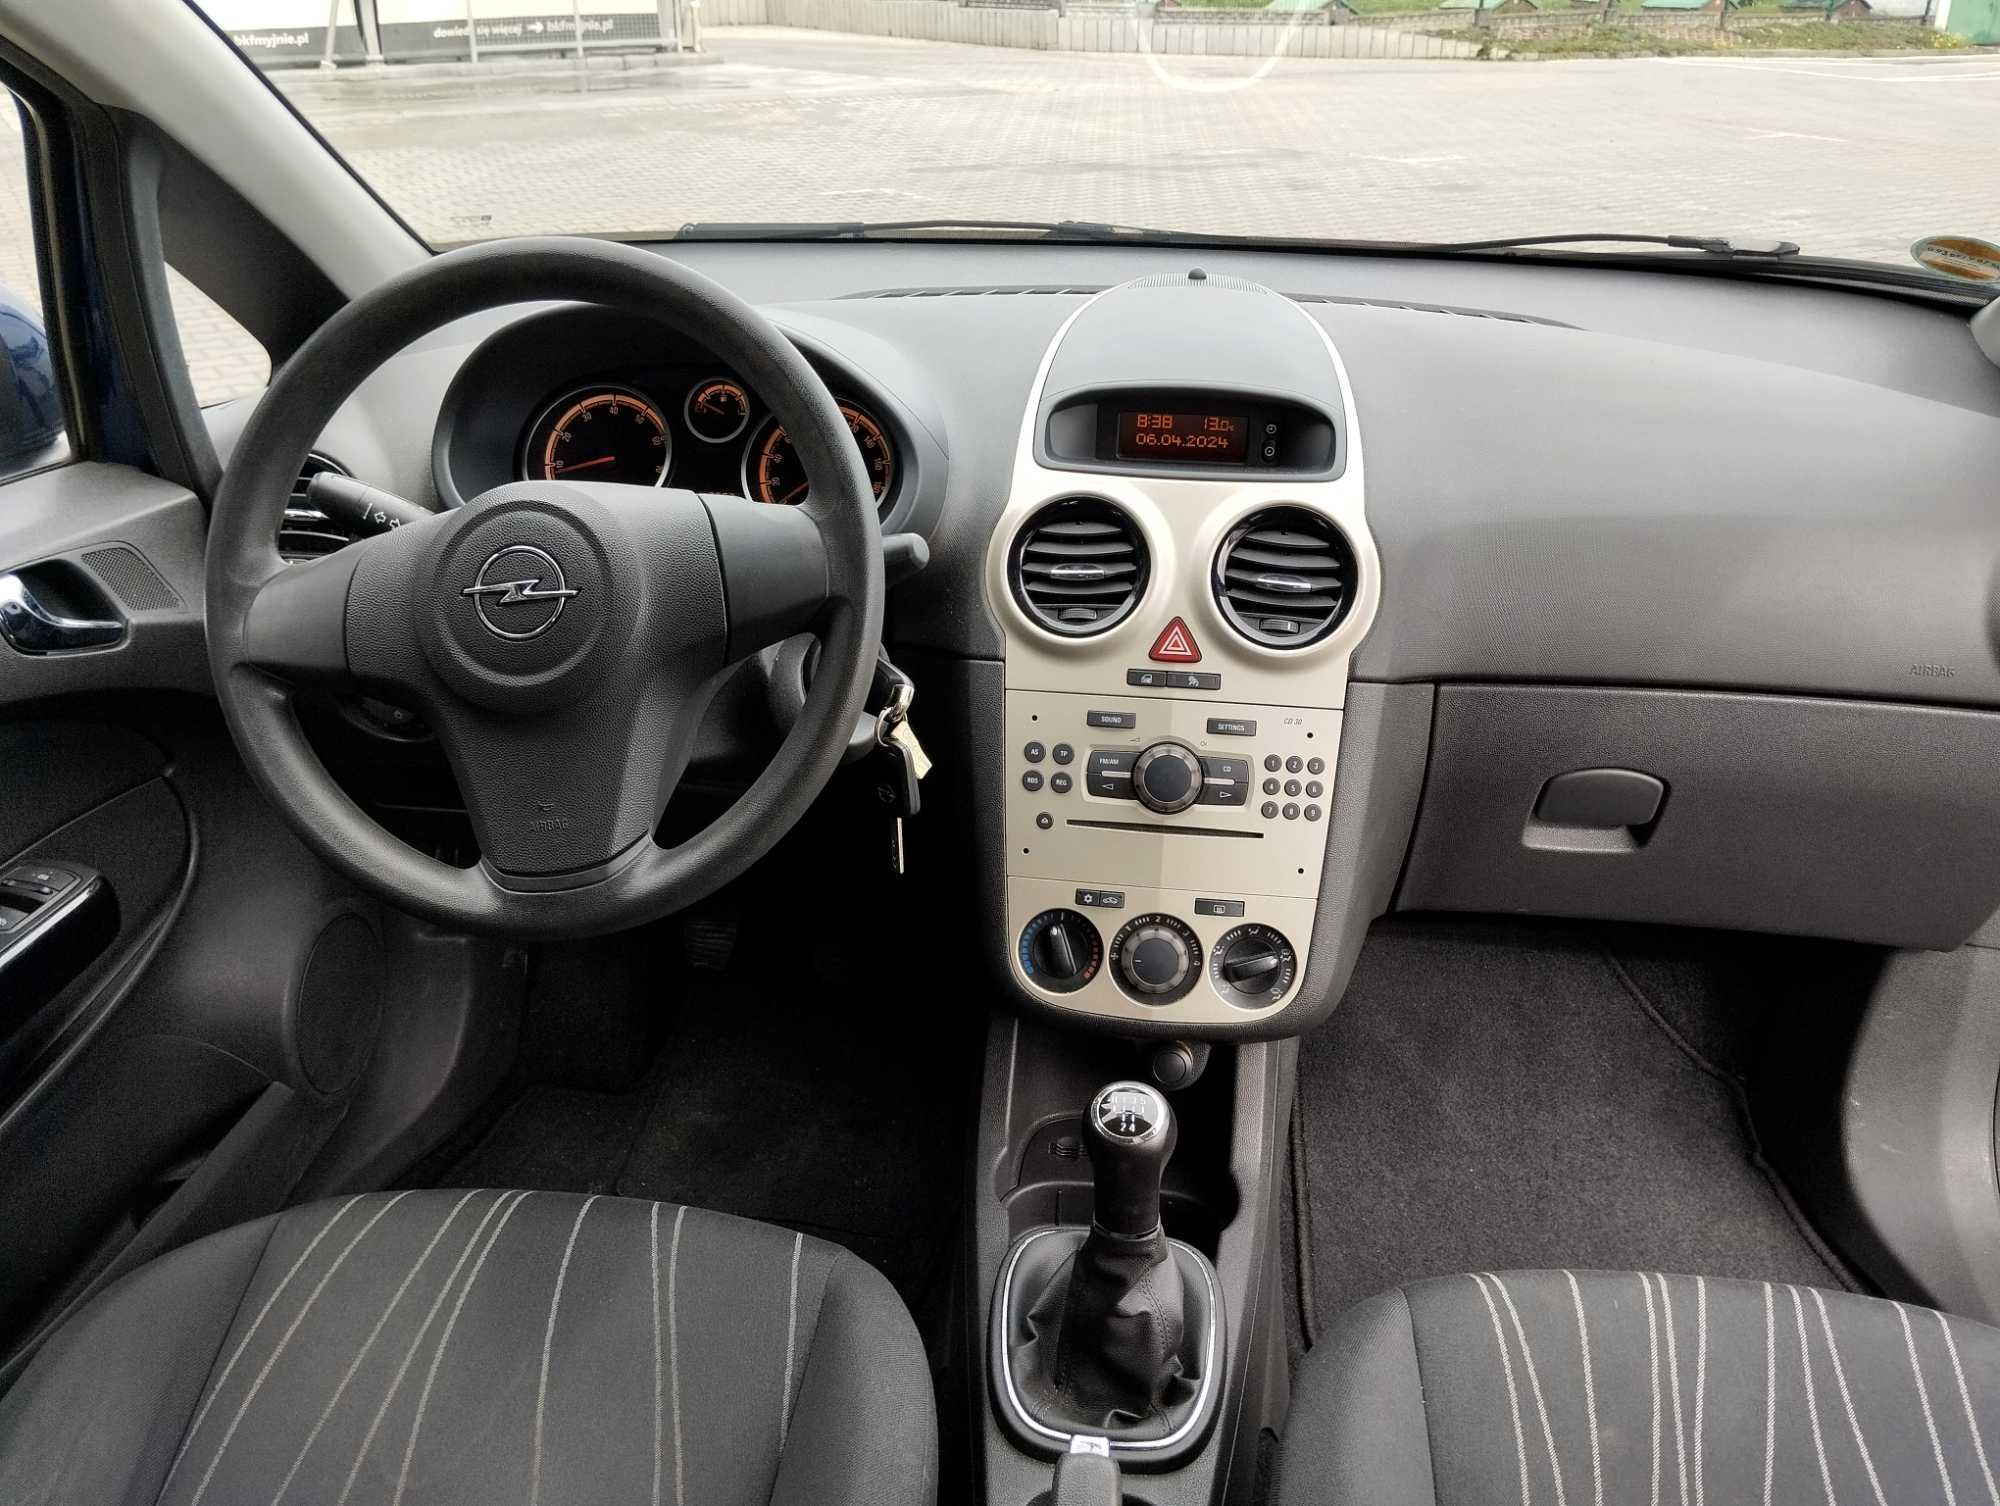 Opel Corsa 1.2 benzyna, oryginał lakier, Klimatyzacja, Niemcy,opłacony